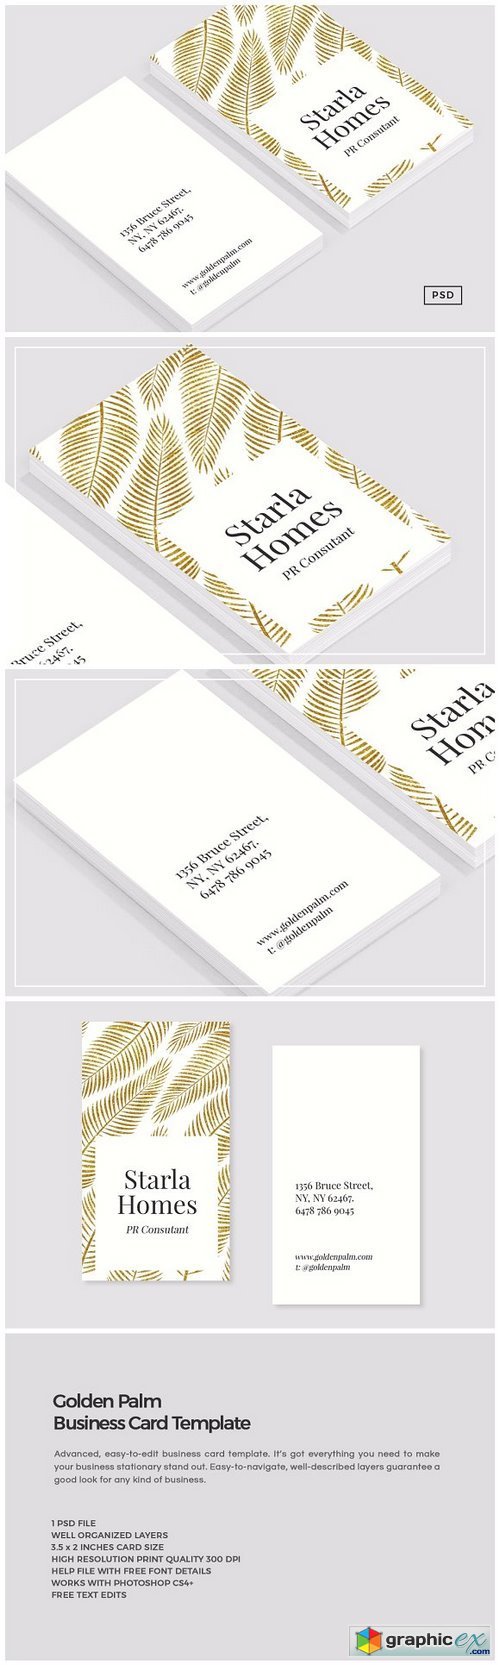 Golden Palm Business Card Template